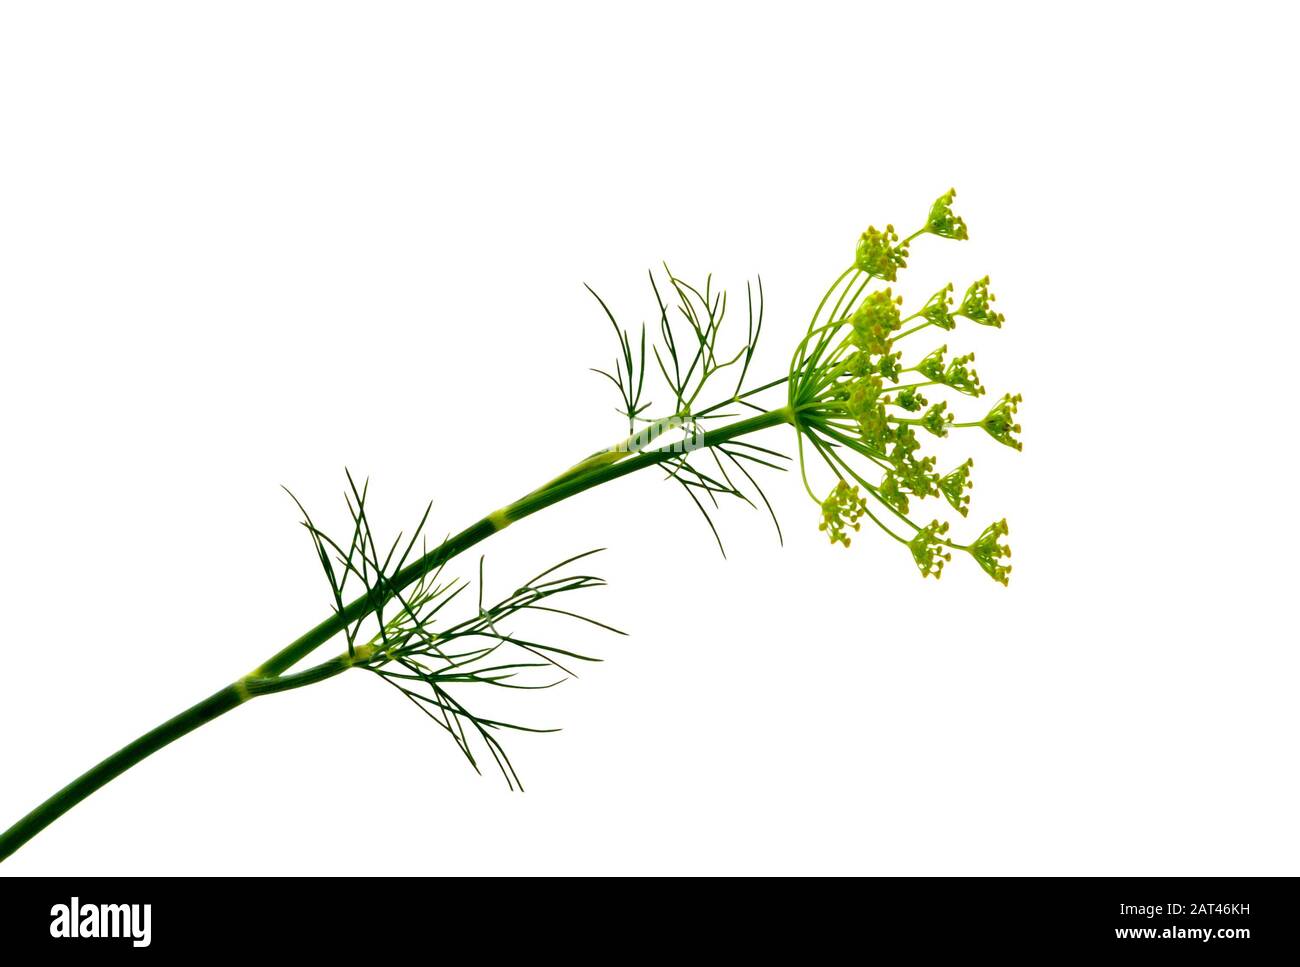 Zweig frischer grüner Dillkräuterblätter isoliert auf weißem Grund. Blühende Pflanze Dill. Stockfoto